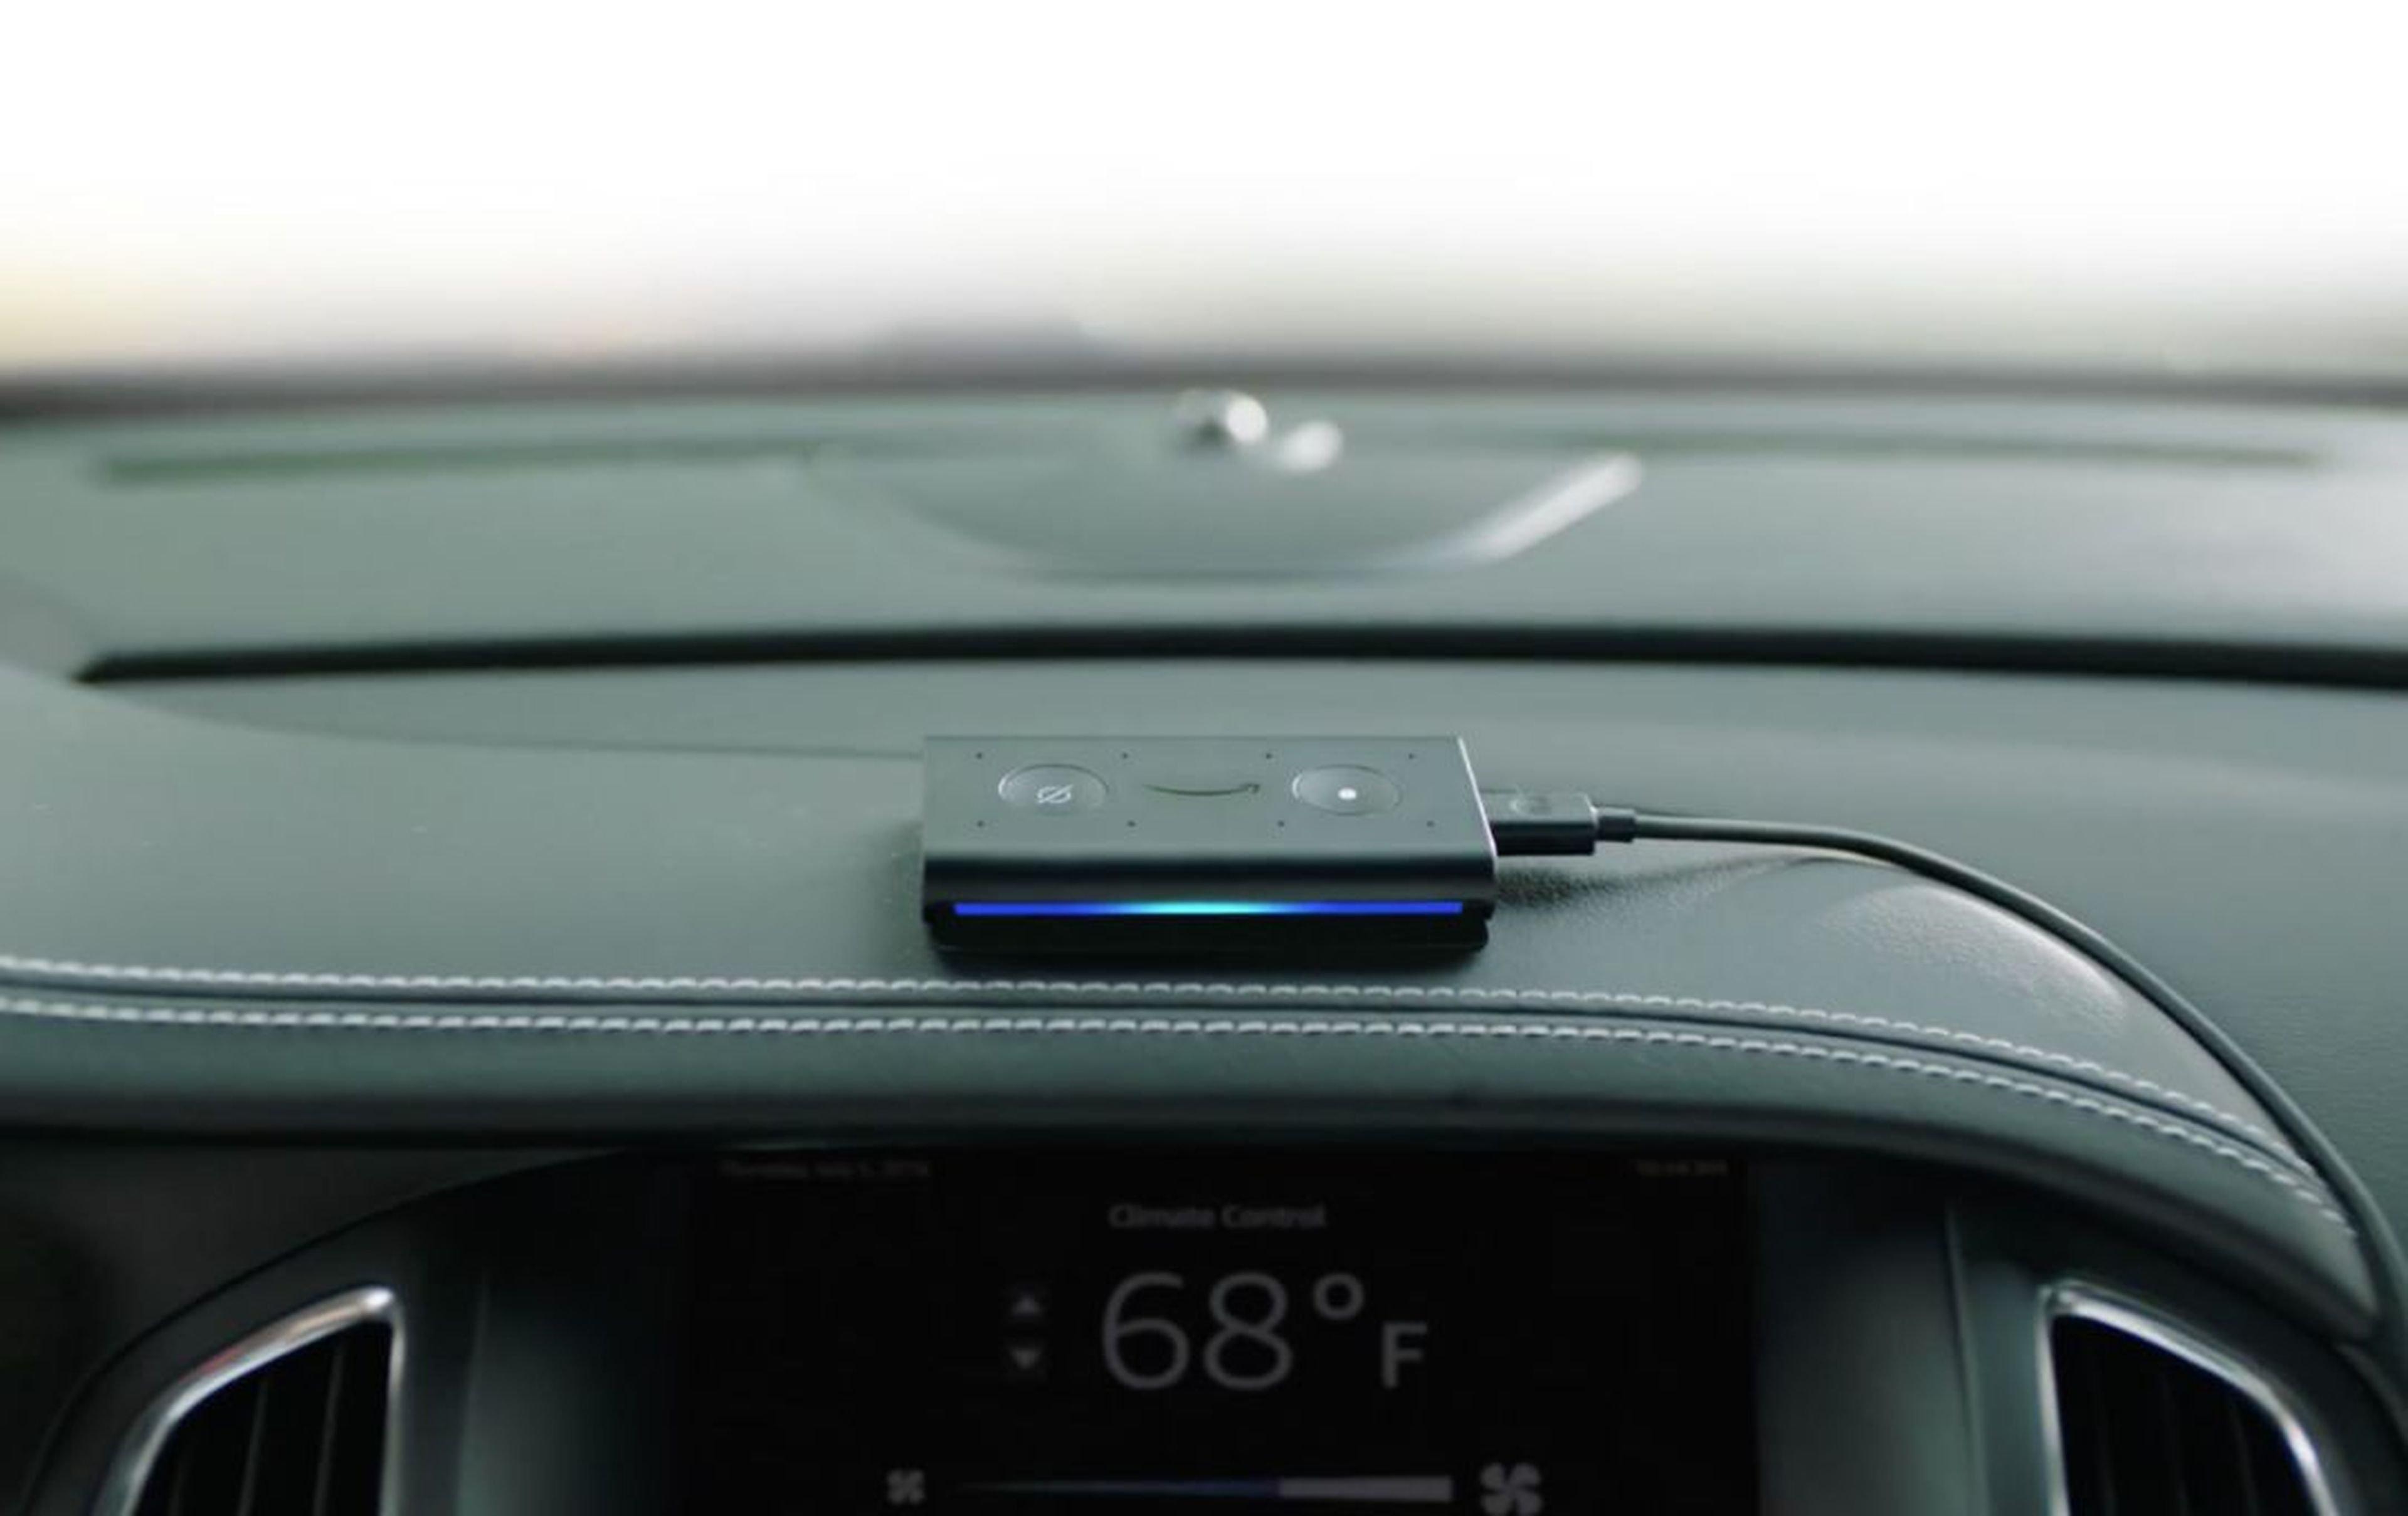 Echo Auto, el dispositivo para llevar Alexa en el coche